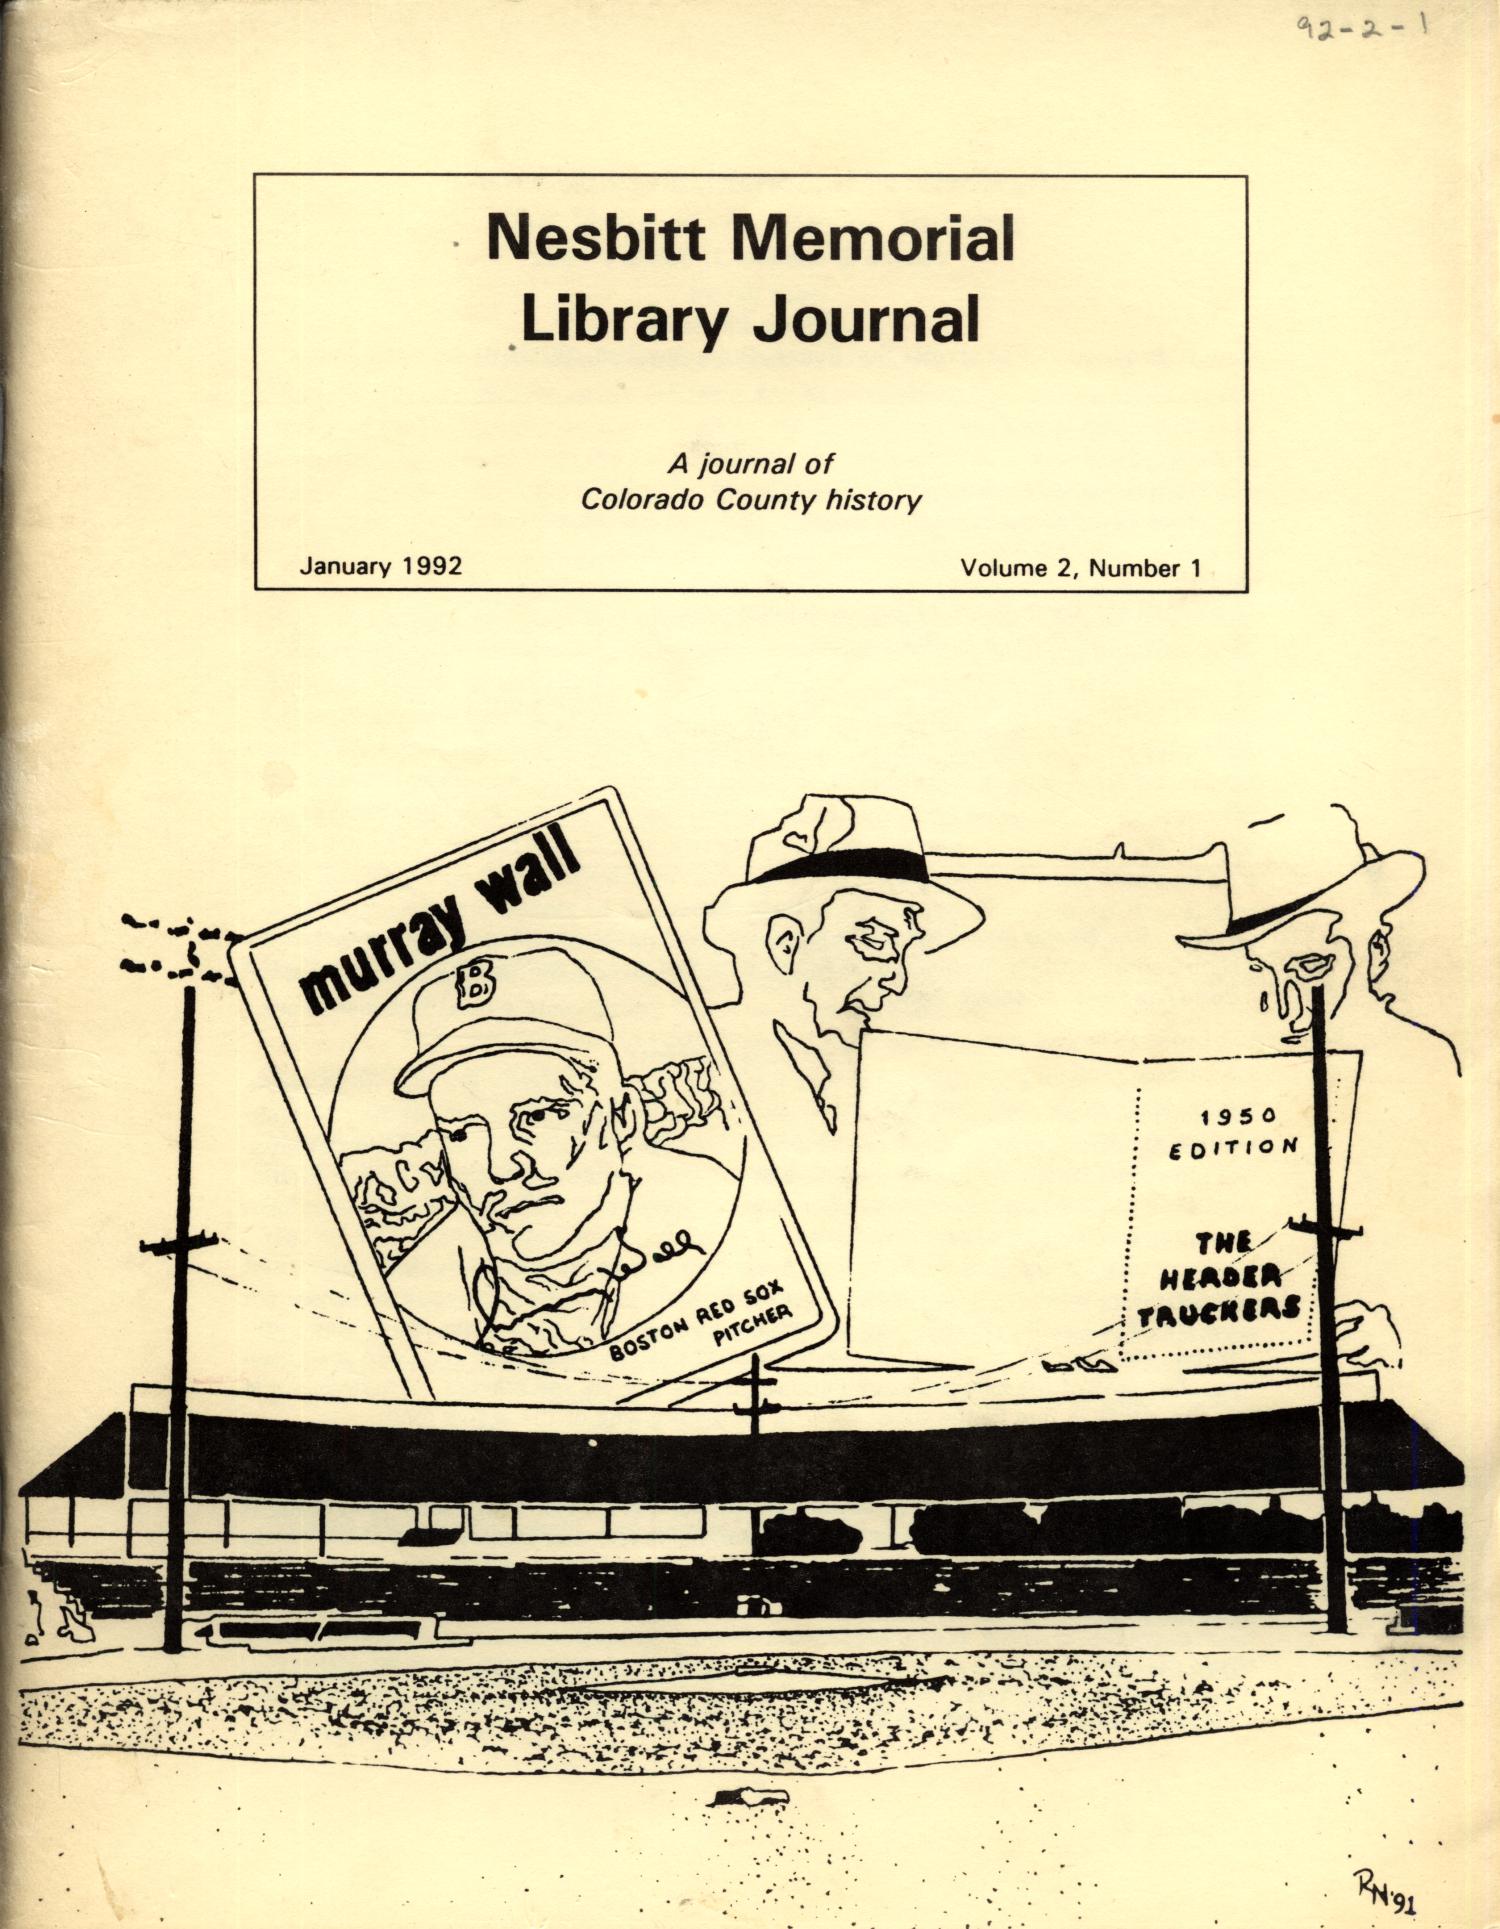 Nesbitt Memorial Library Journal, Volume 2, Number 1, January 1992
                                                
                                                    Front Cover
                                                